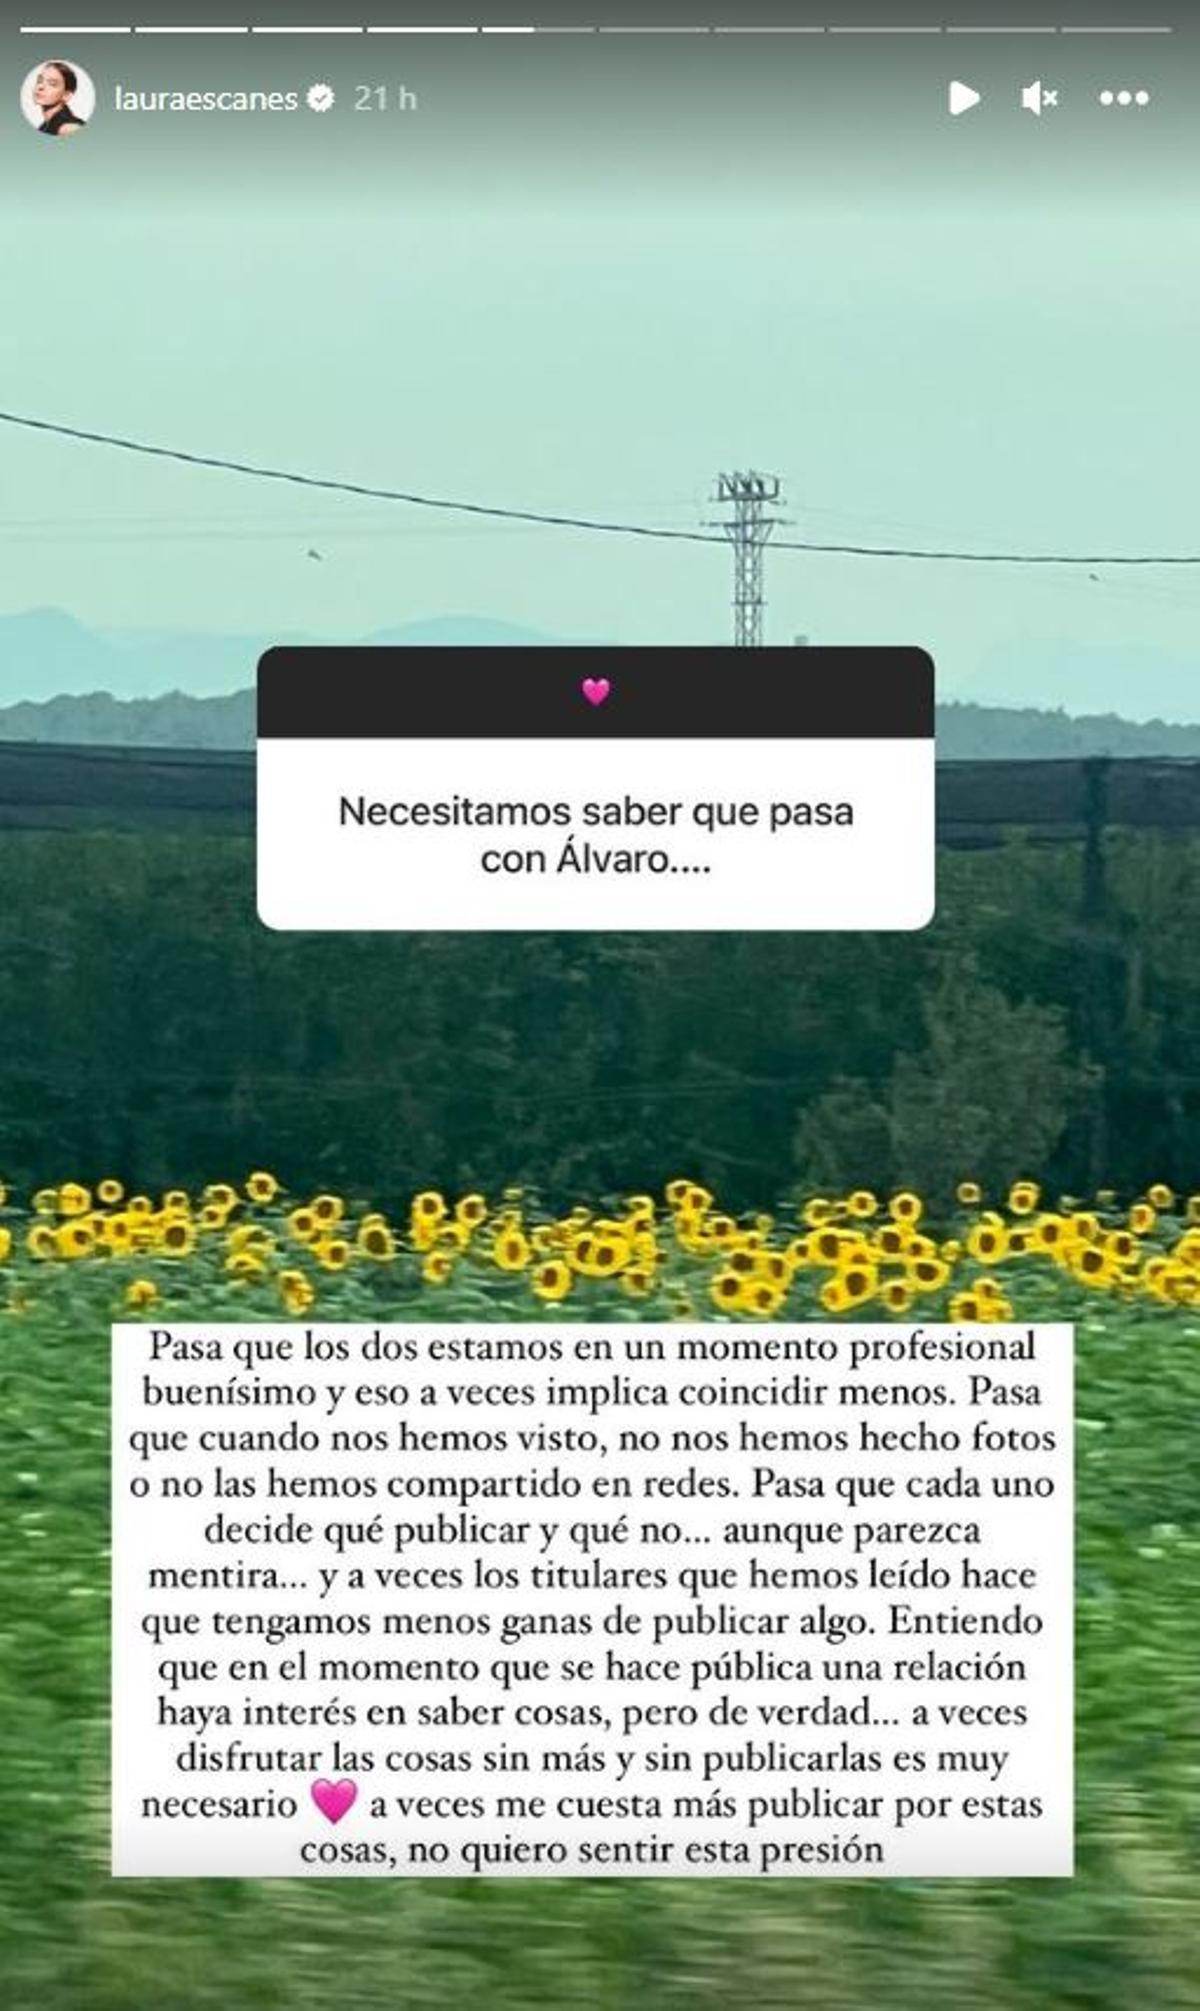 Historia de Instagram de Laura Escanes sobre su separación de Álvaro de Luna